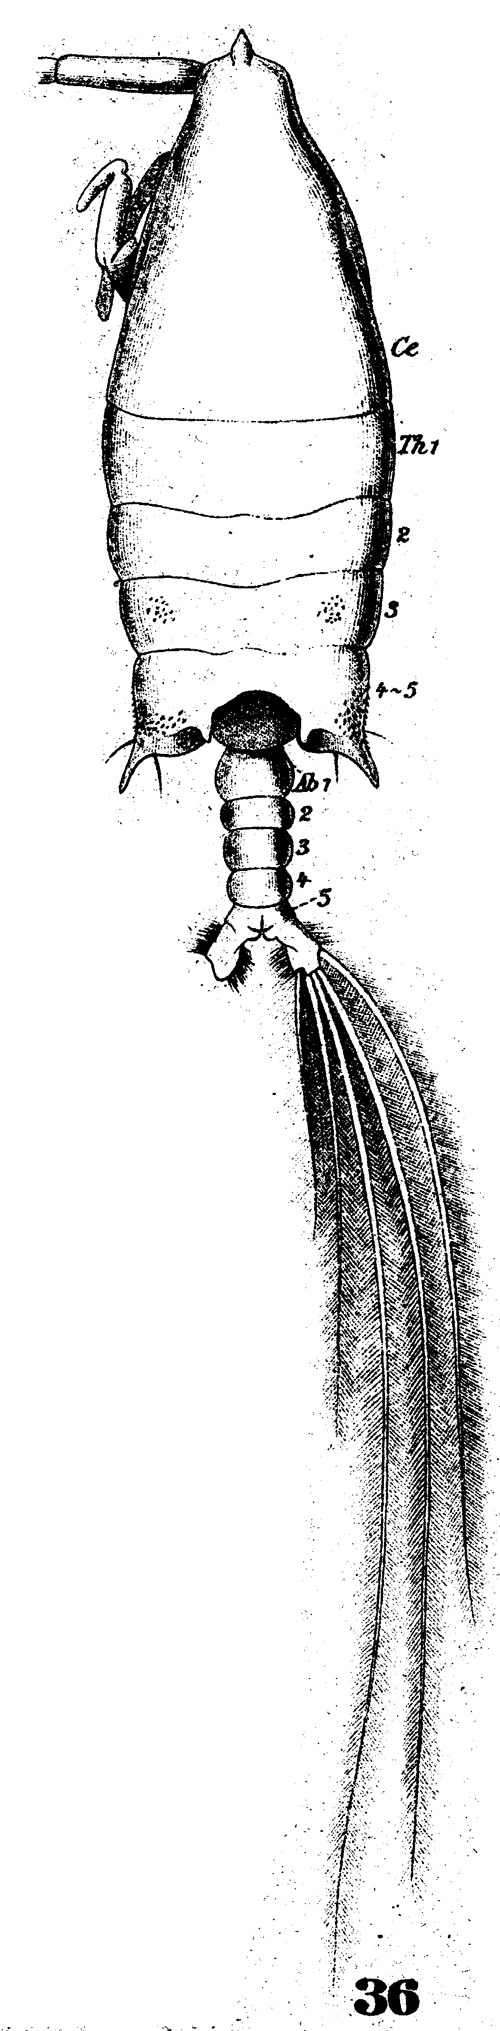 Species Arietellus setosus - Plate 12 of morphological figures